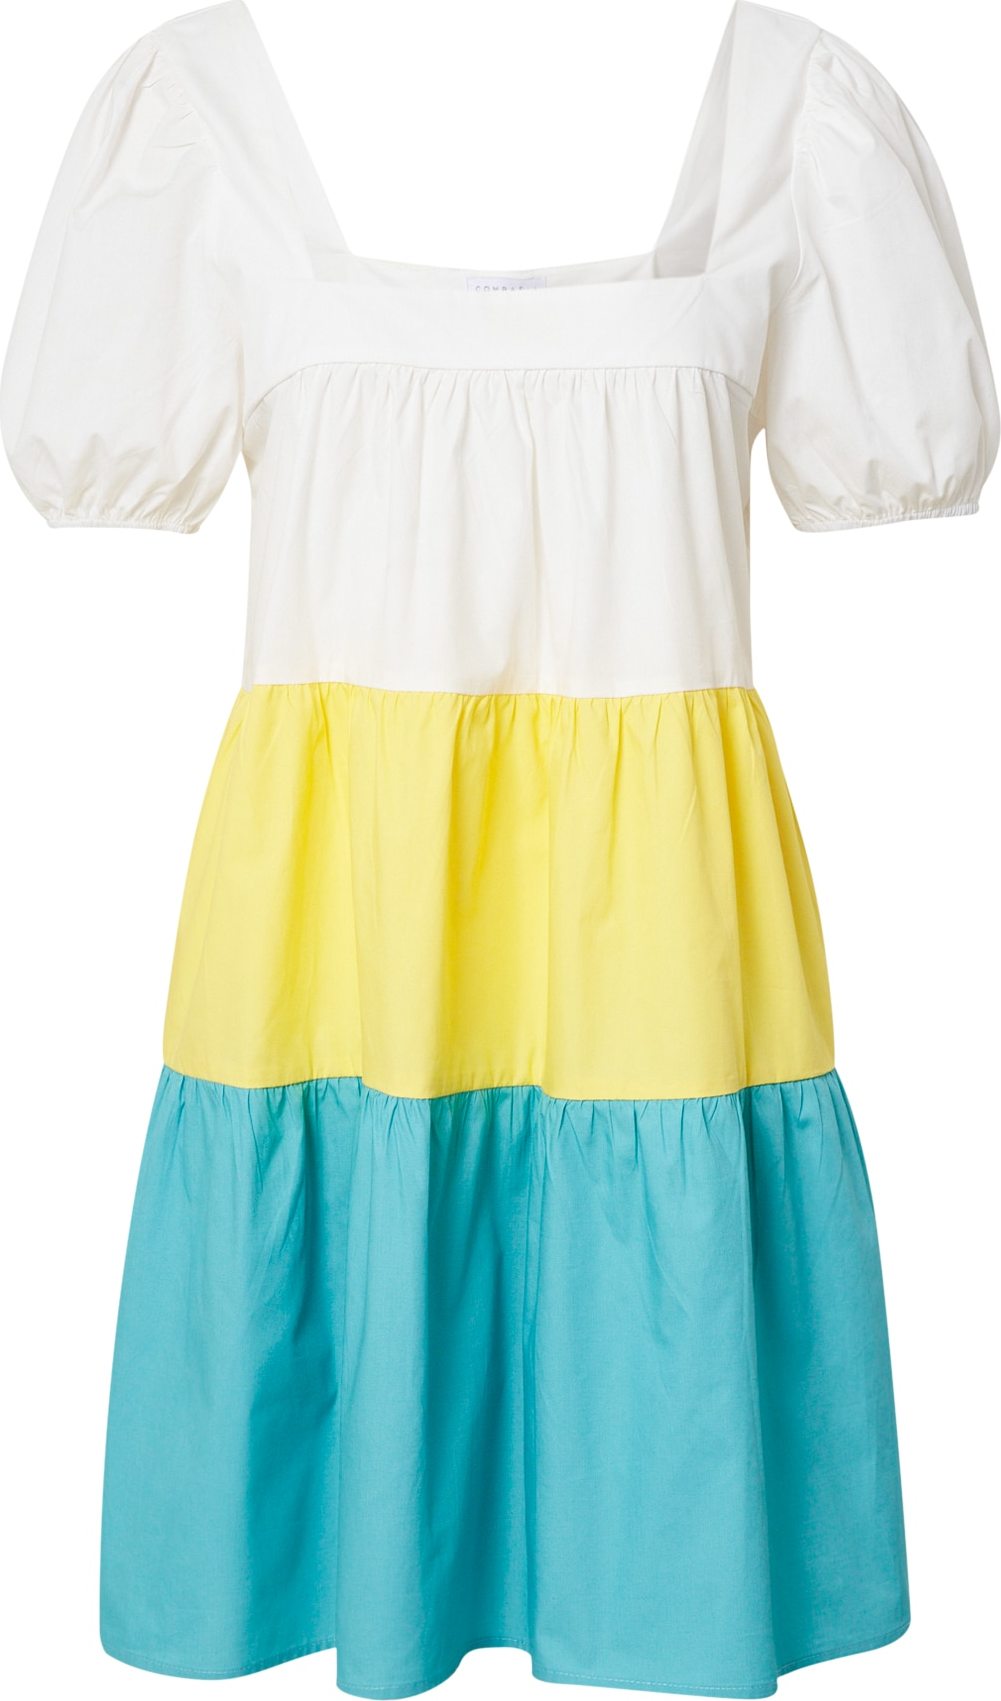 Compania Fantastica Letní šaty 'Vestido' bílá / žlutá / světlemodrá